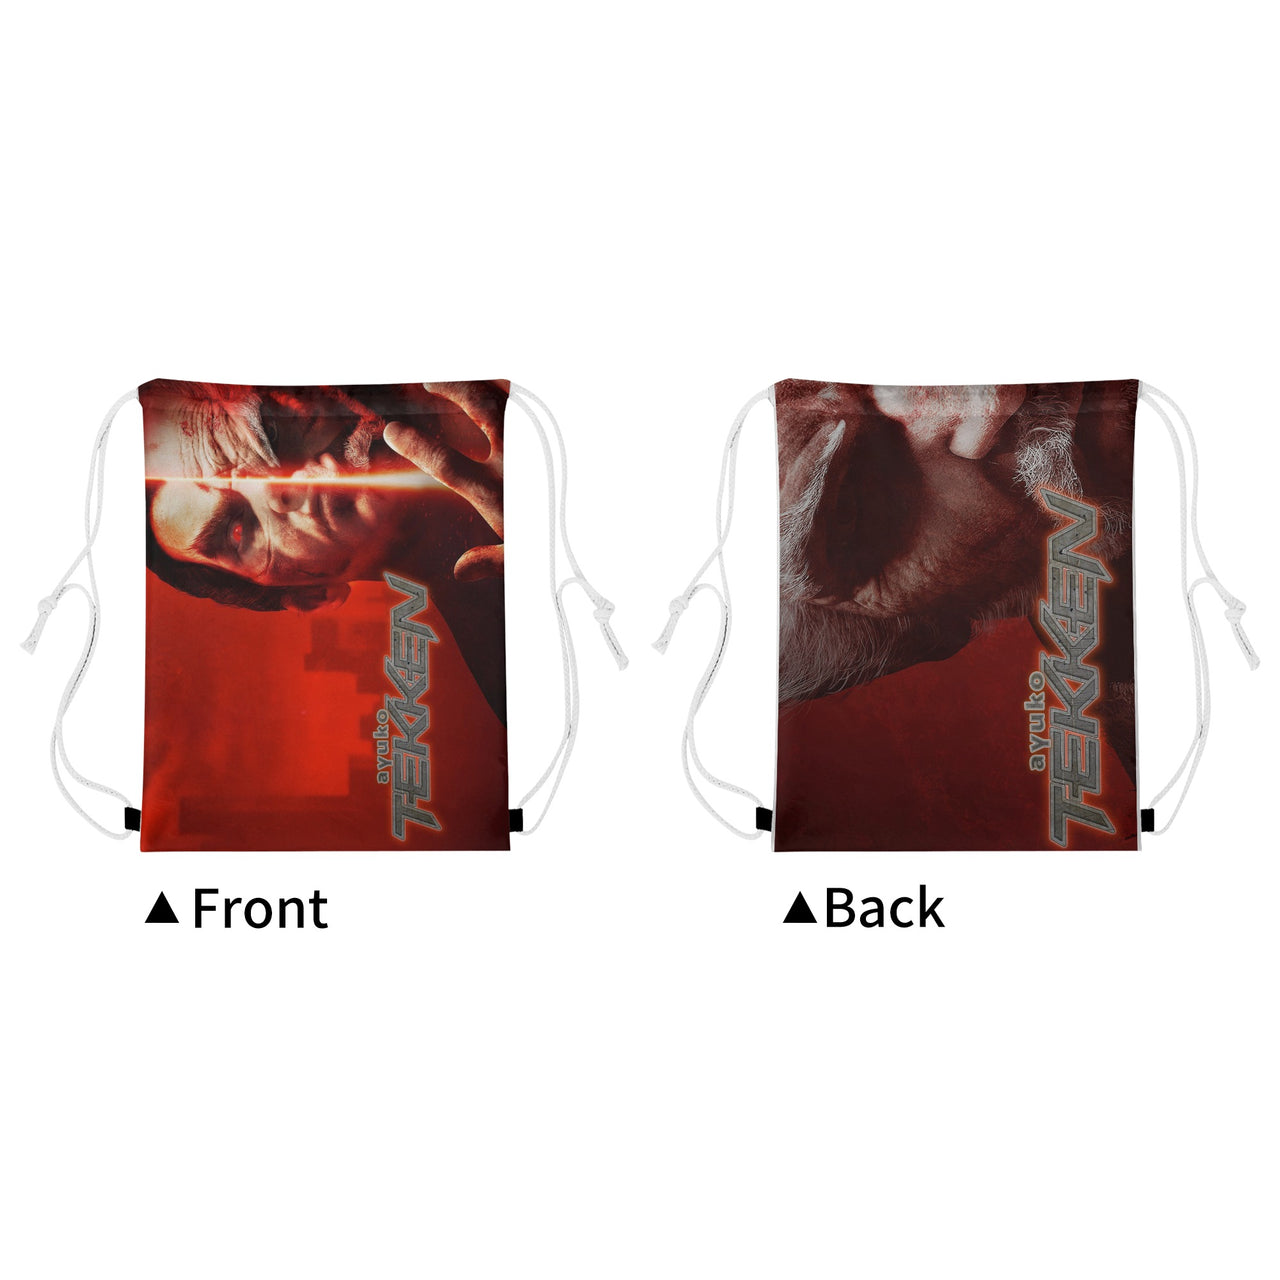 Tekken Inspired Drawstring Bag